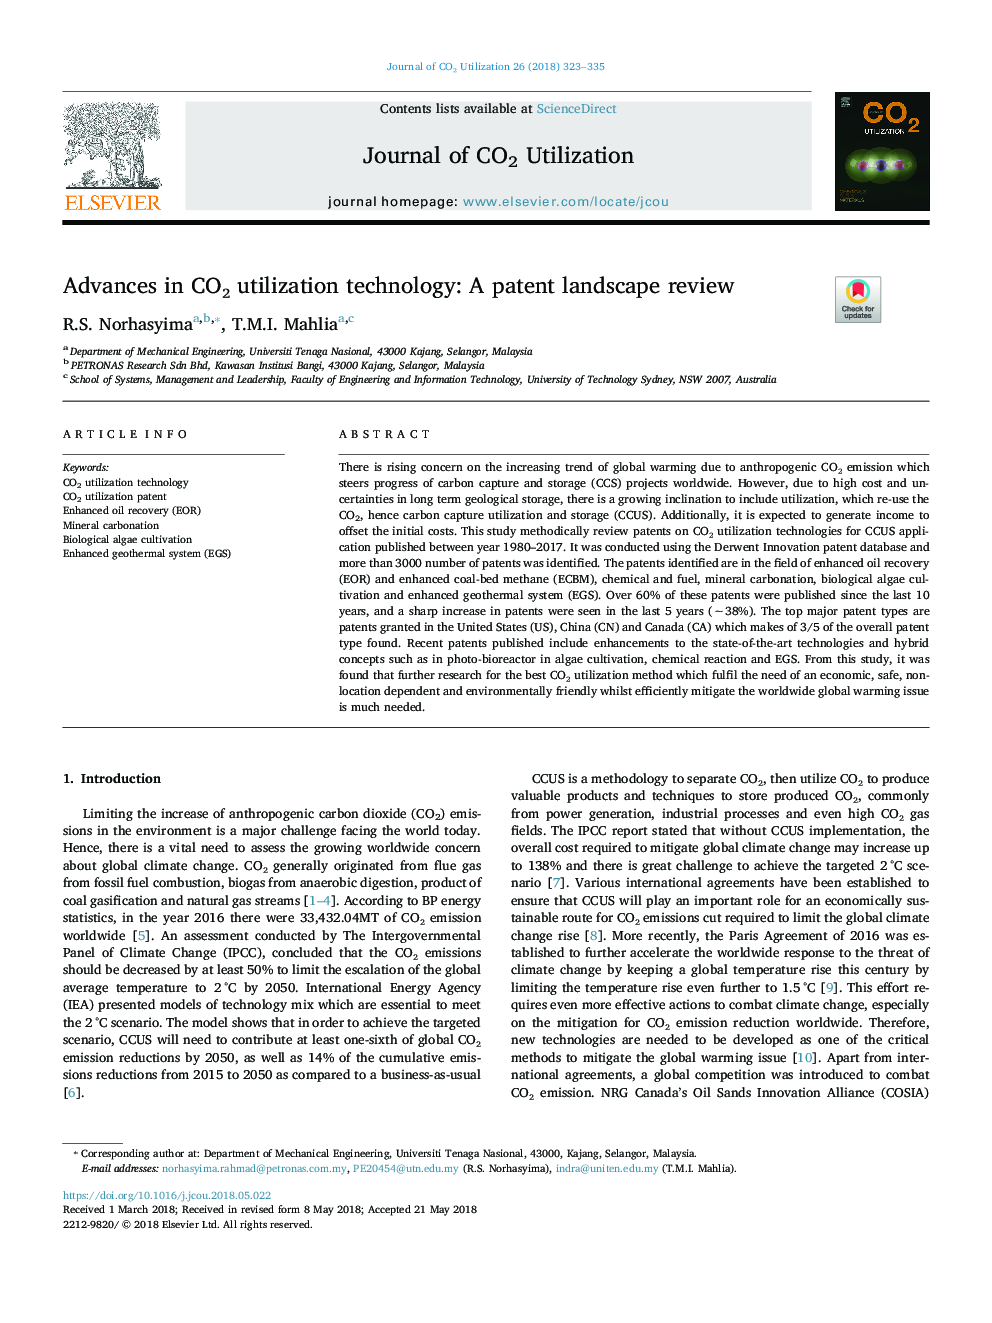 Advances in COâ utilization technology: A patent landscape review